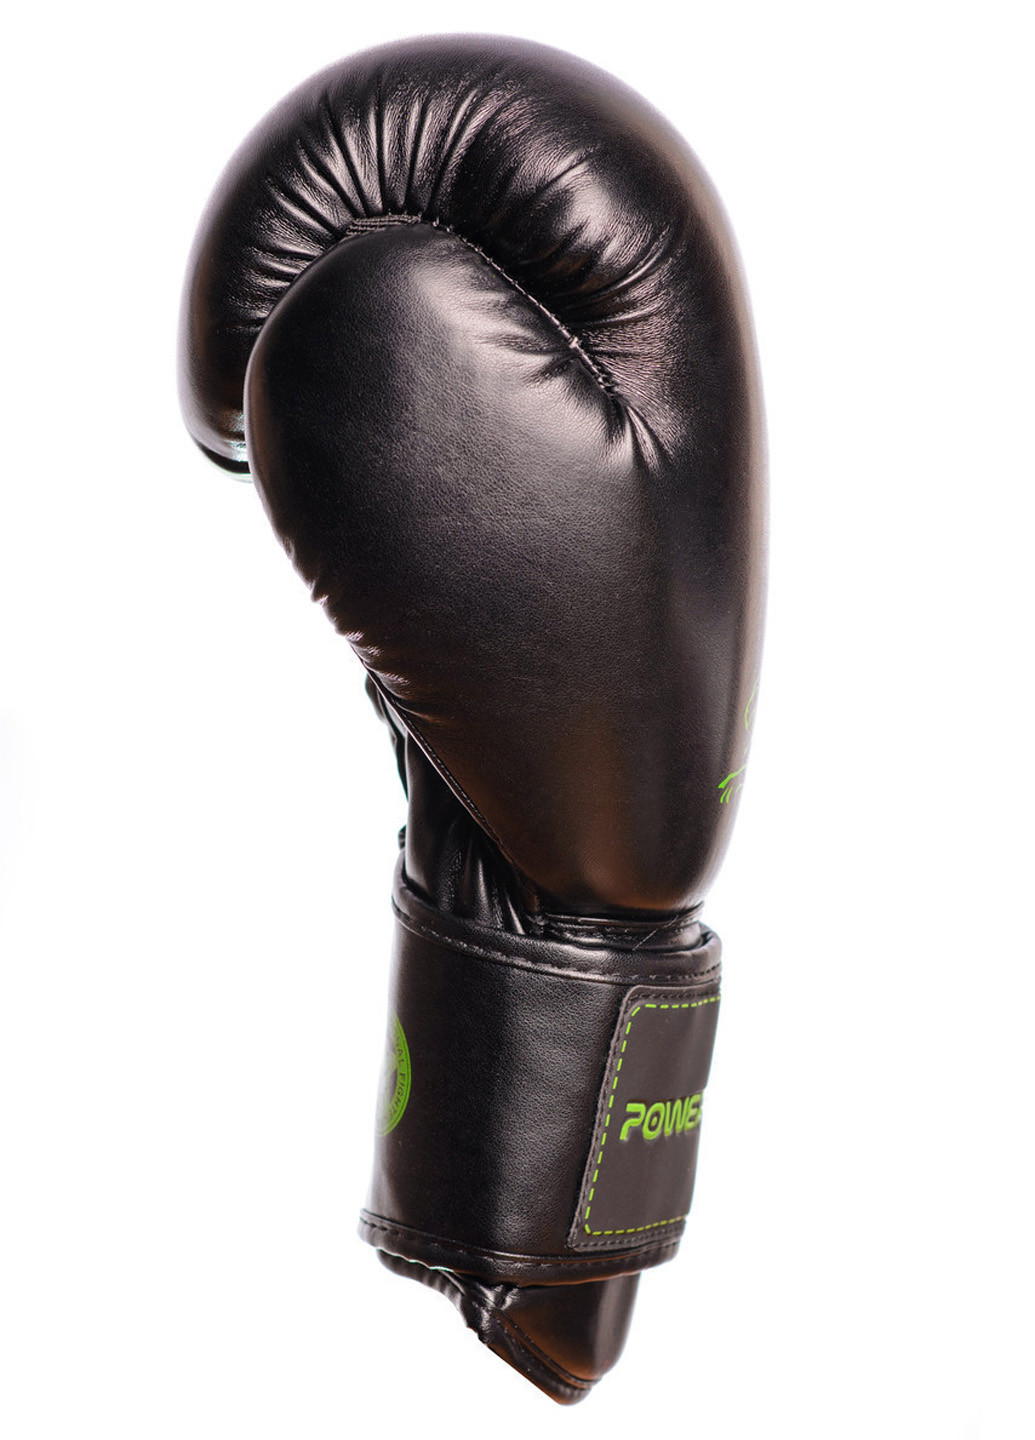 Боксерские перчатки 16 унций PowerPlay (196422696)